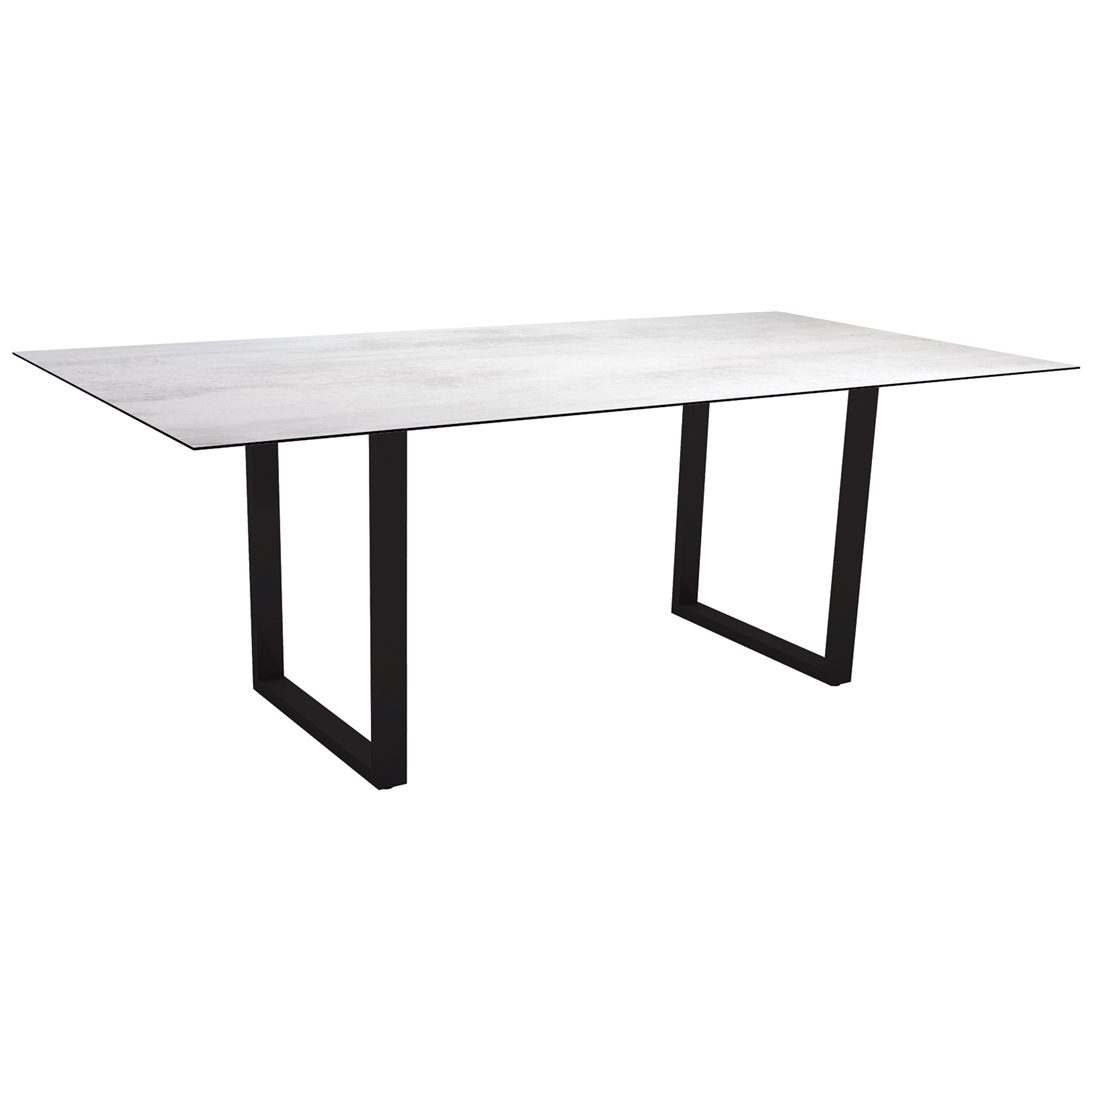 Stern Kufentisch, Gestell schwarz matt, Tischplatte HPL Zement hell, Tischgröße: 200x100 cm